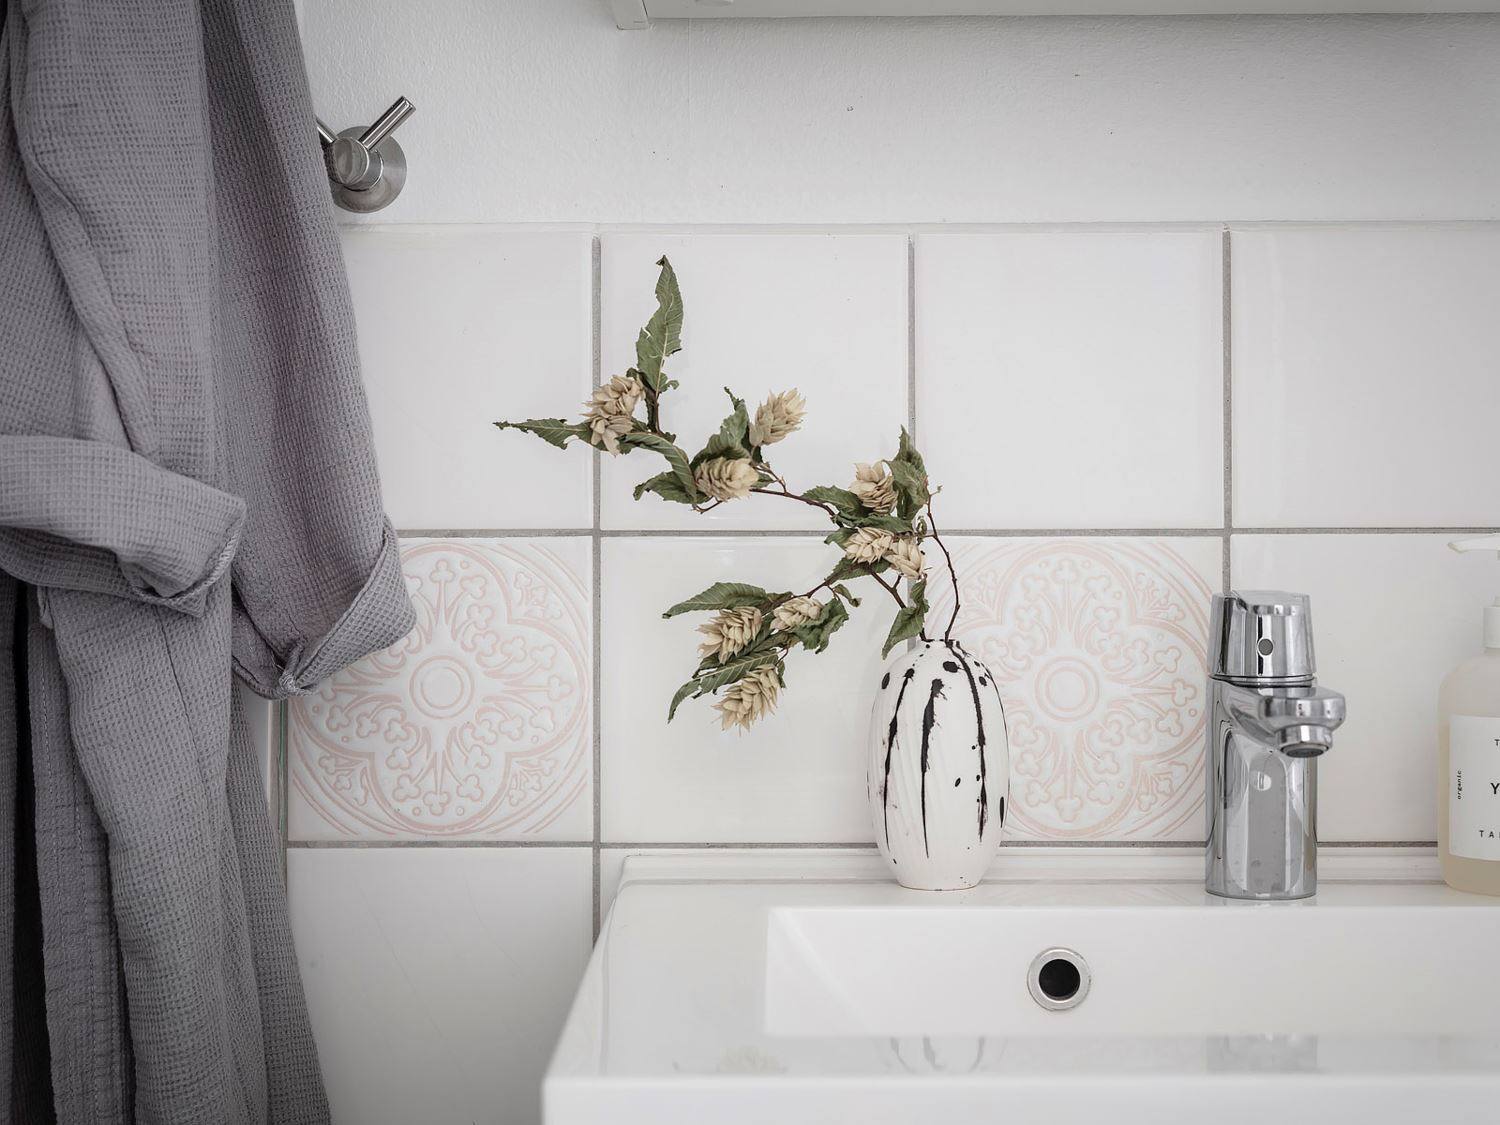 Những chi tiết tinh tế được thể hiện qua hoa văn nhã nhặn của gạch bông ốp tường. Trên bồn rửa tay bằng sứ là chiếc lọ hoa xinh đẹp, dịu dàng, thể hiện sự nữ tính của chủ nhân.